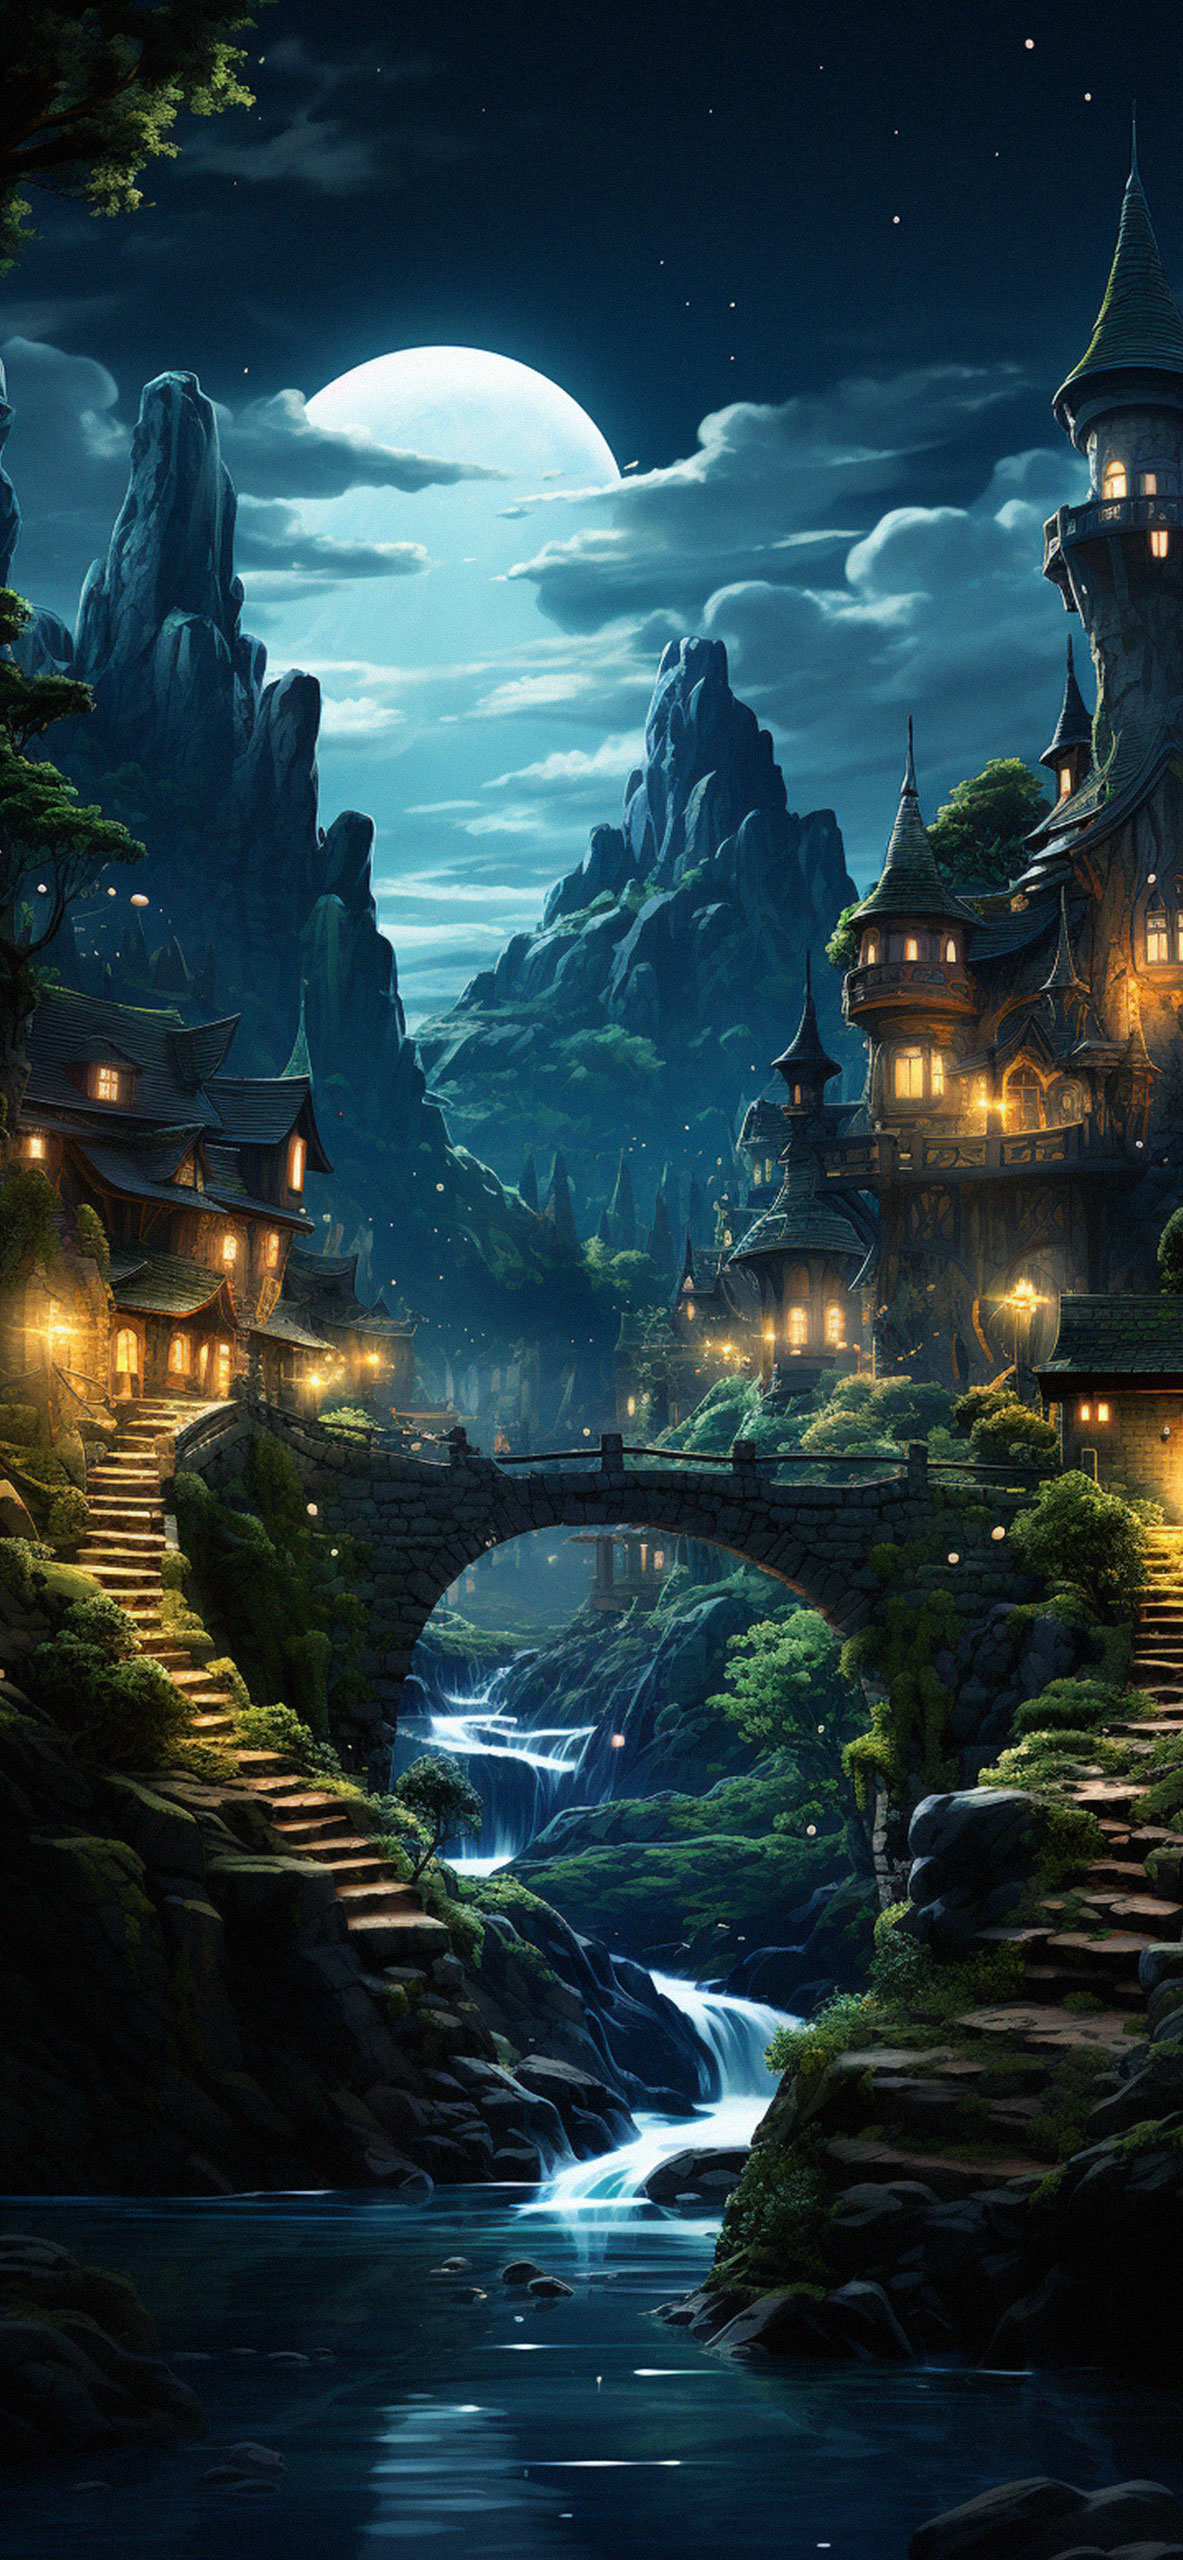 Fantasy Landscape Images - Free Download on Freepik